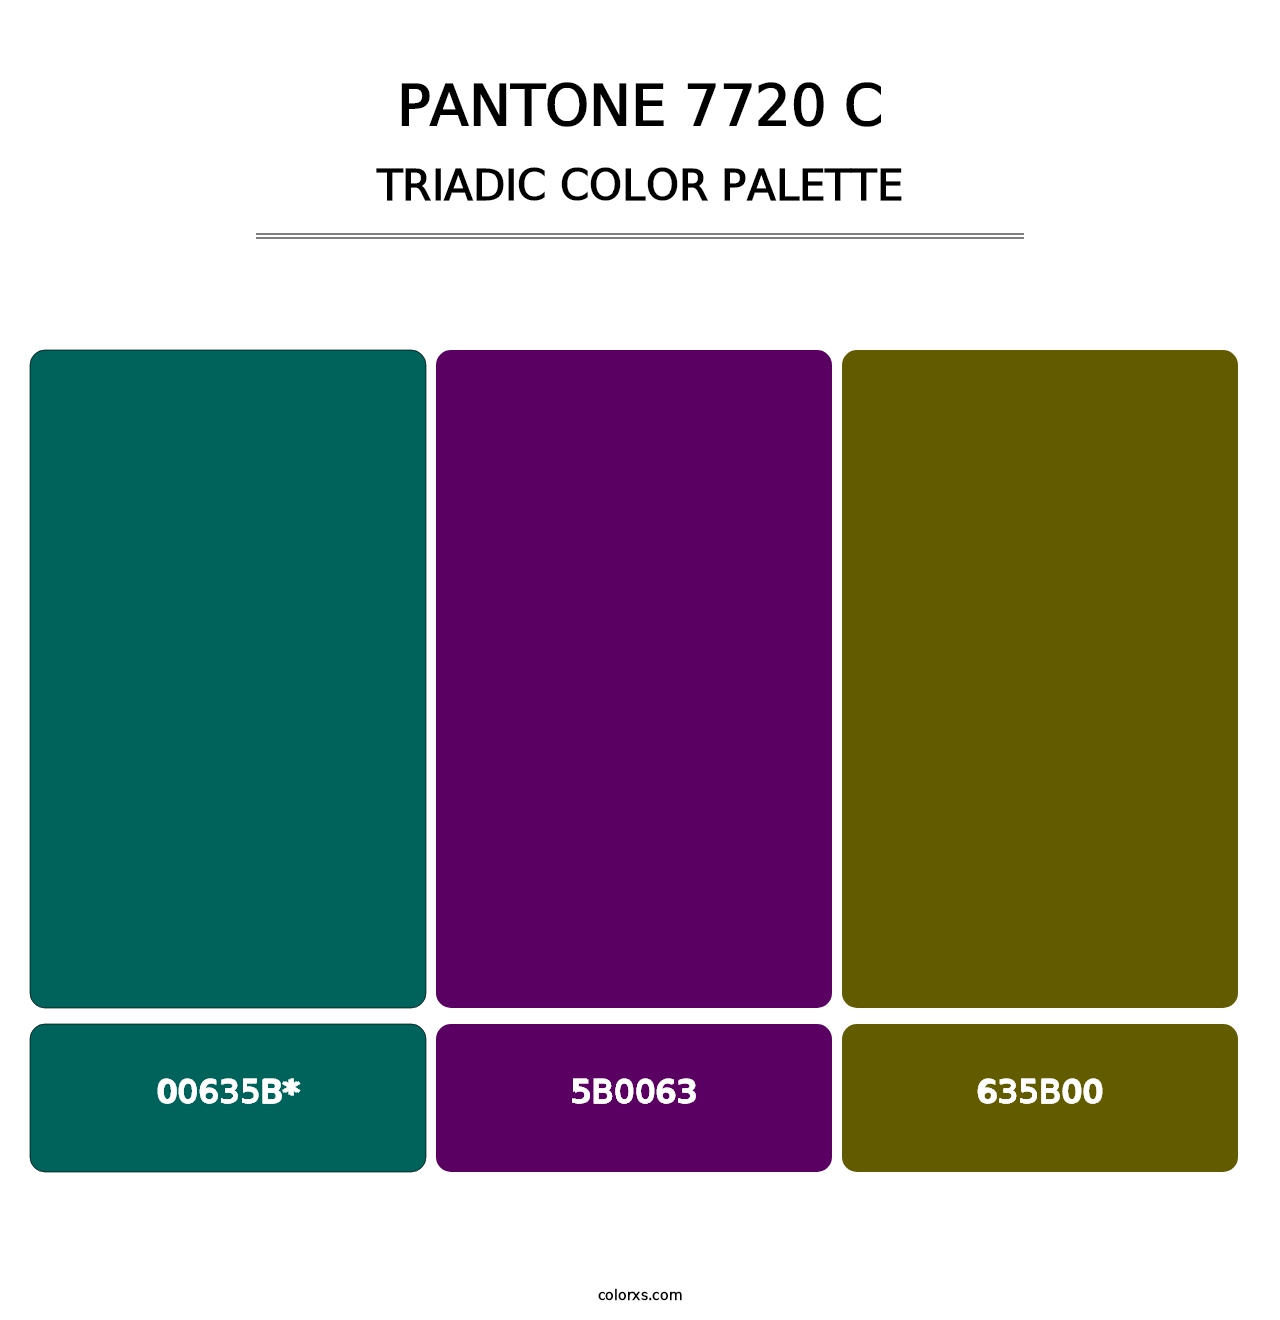 PANTONE 7720 C - Triadic Color Palette